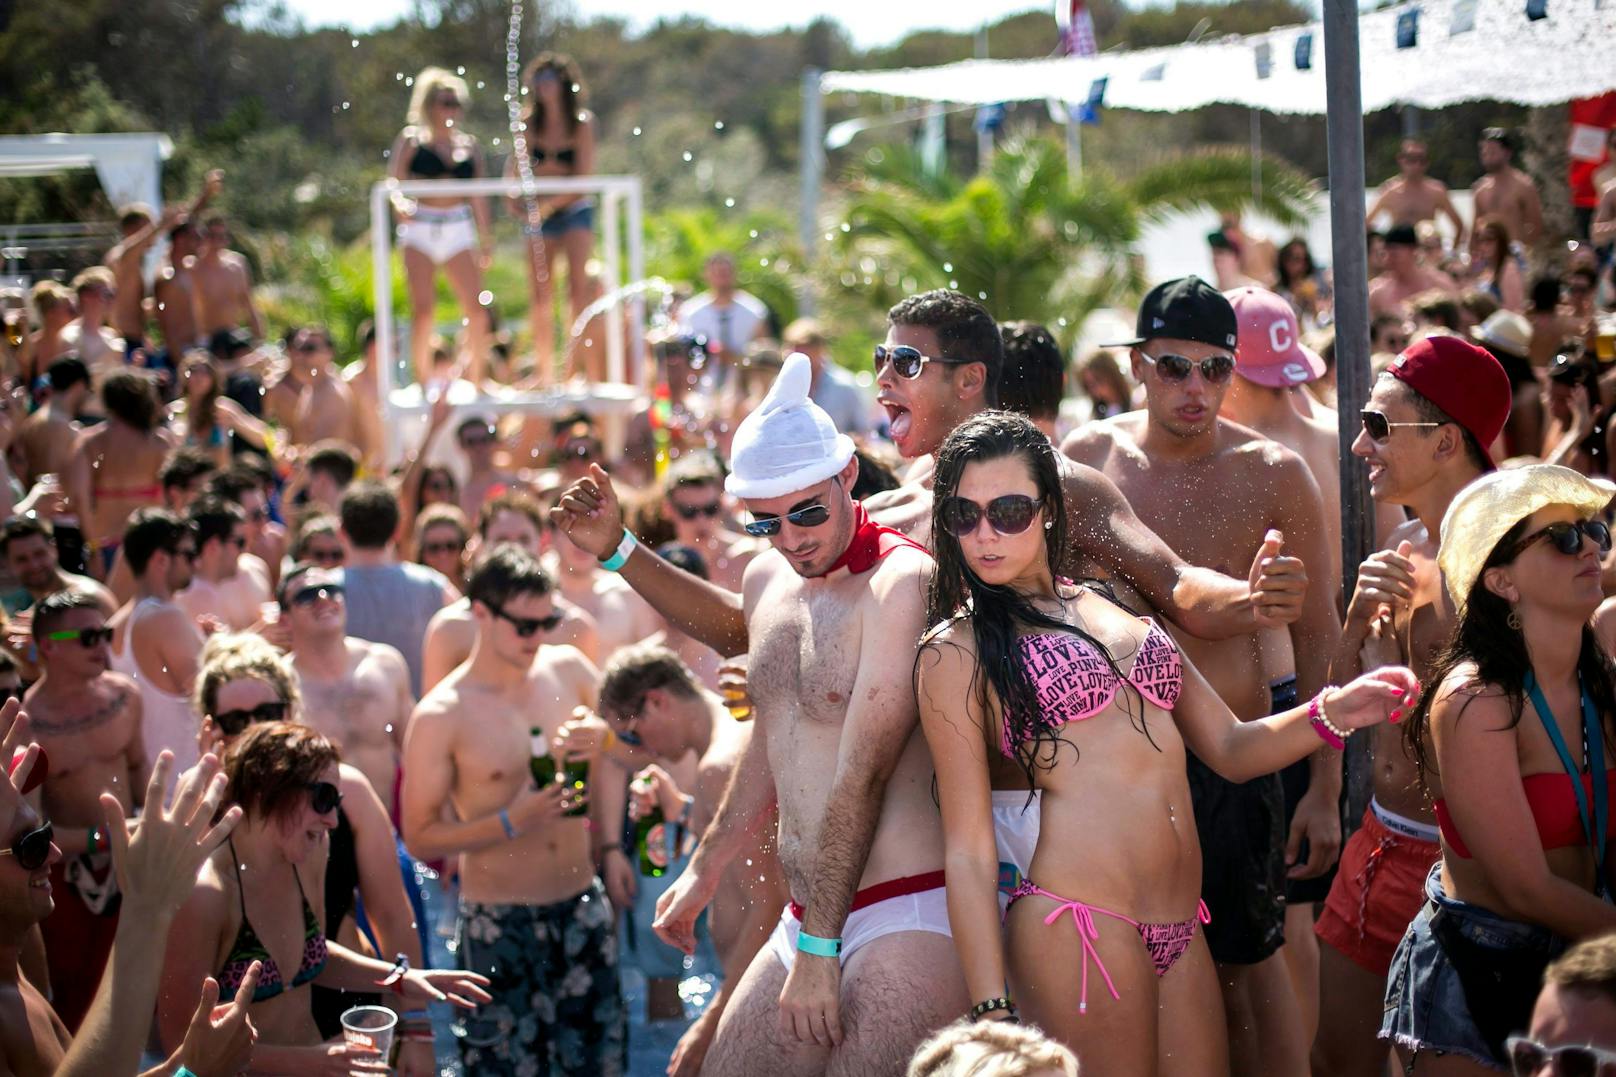 Der Partystrand Zrce auf der Insel Pag ist eine beliebte Festival-Location. Archivbild, 2012